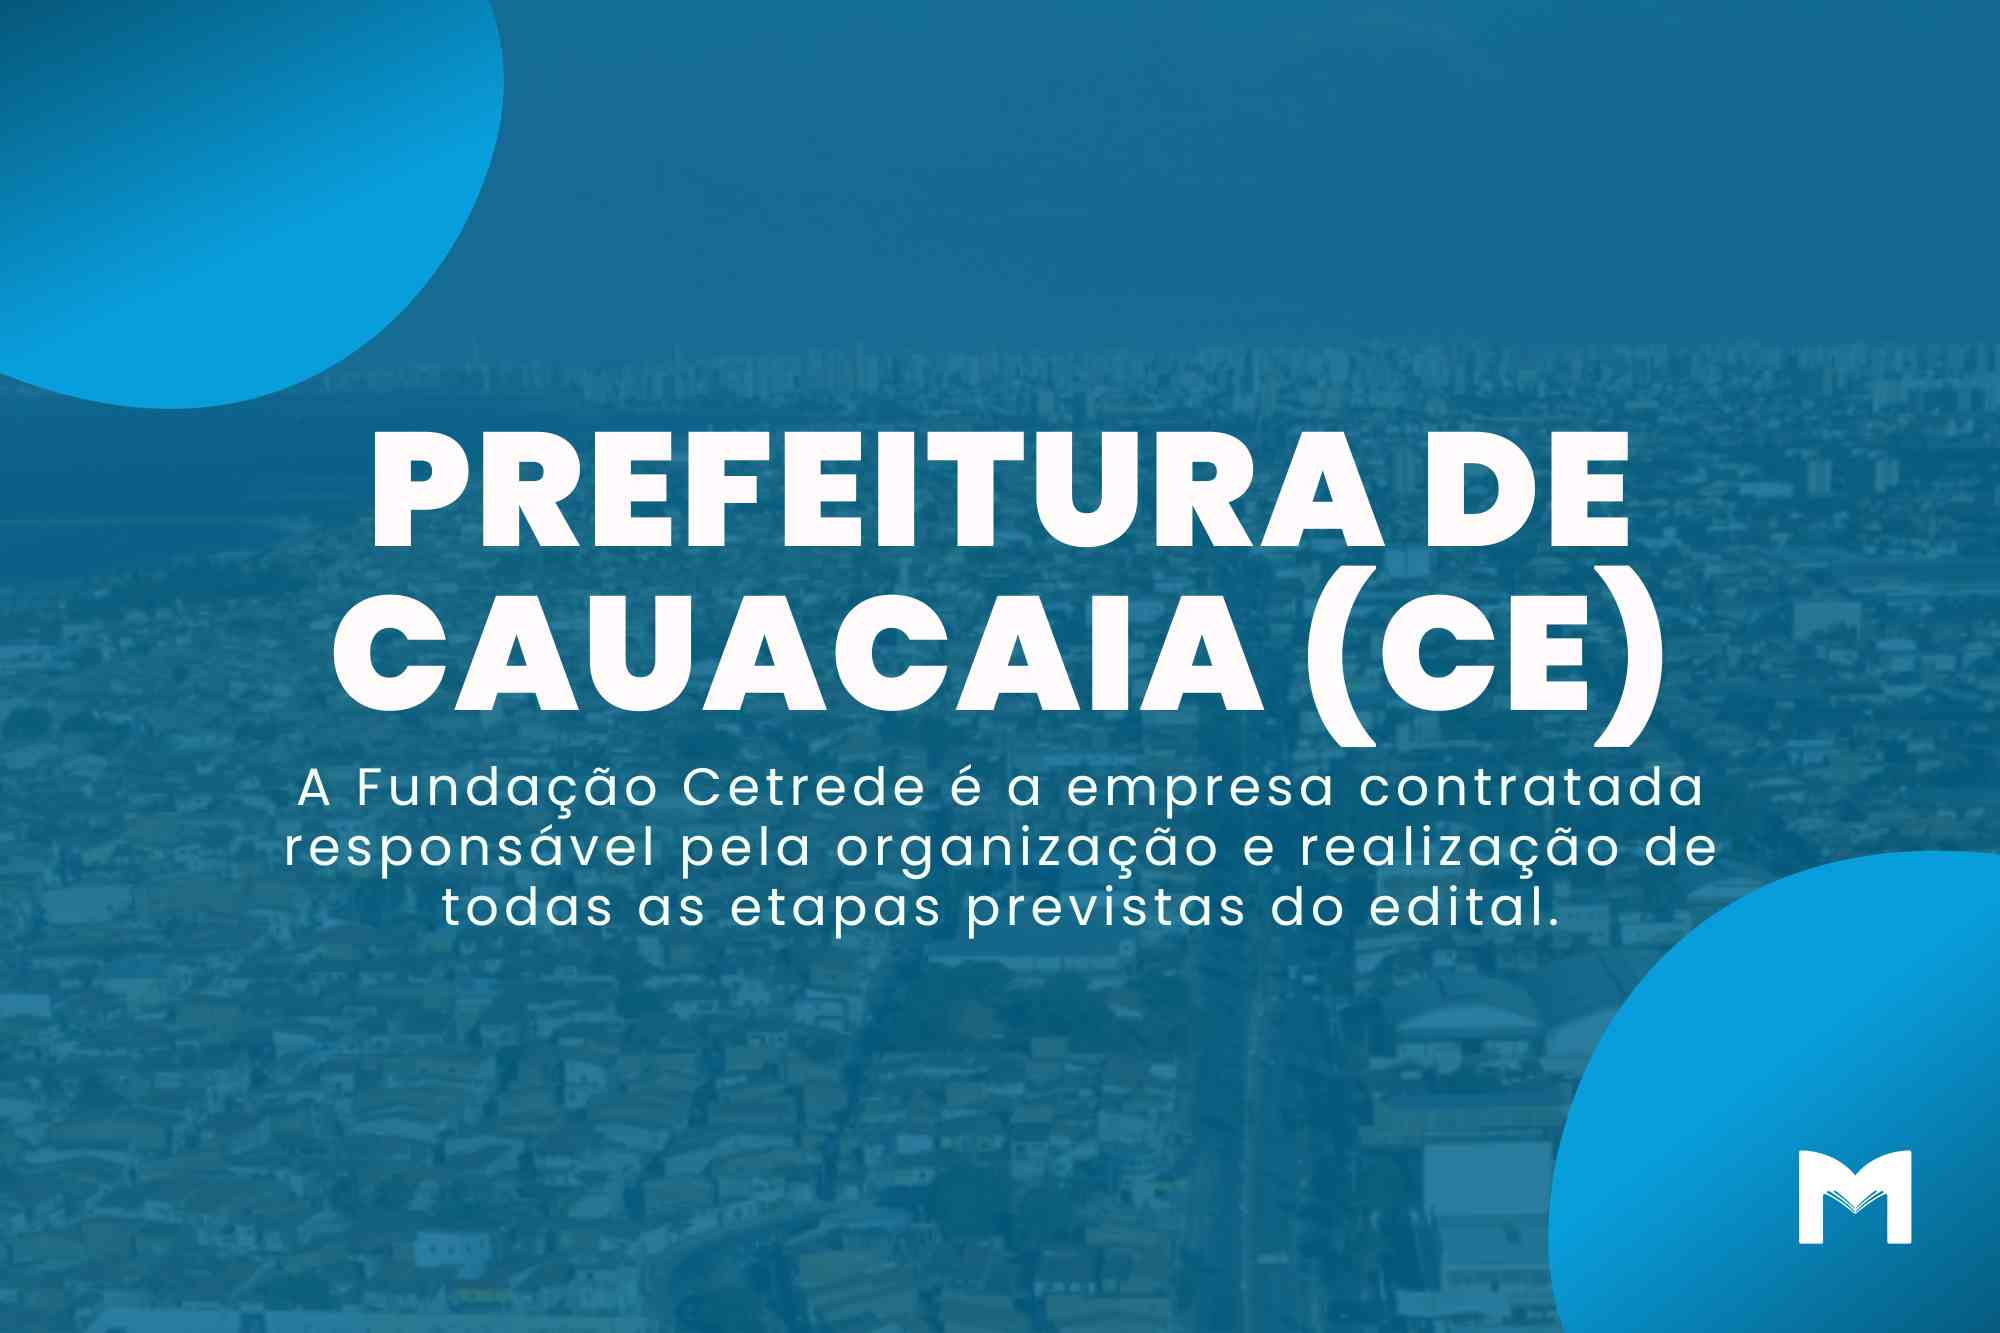 Concurso Prefeitura de Caucaia CE: 1.870 vagas em 2 editais!